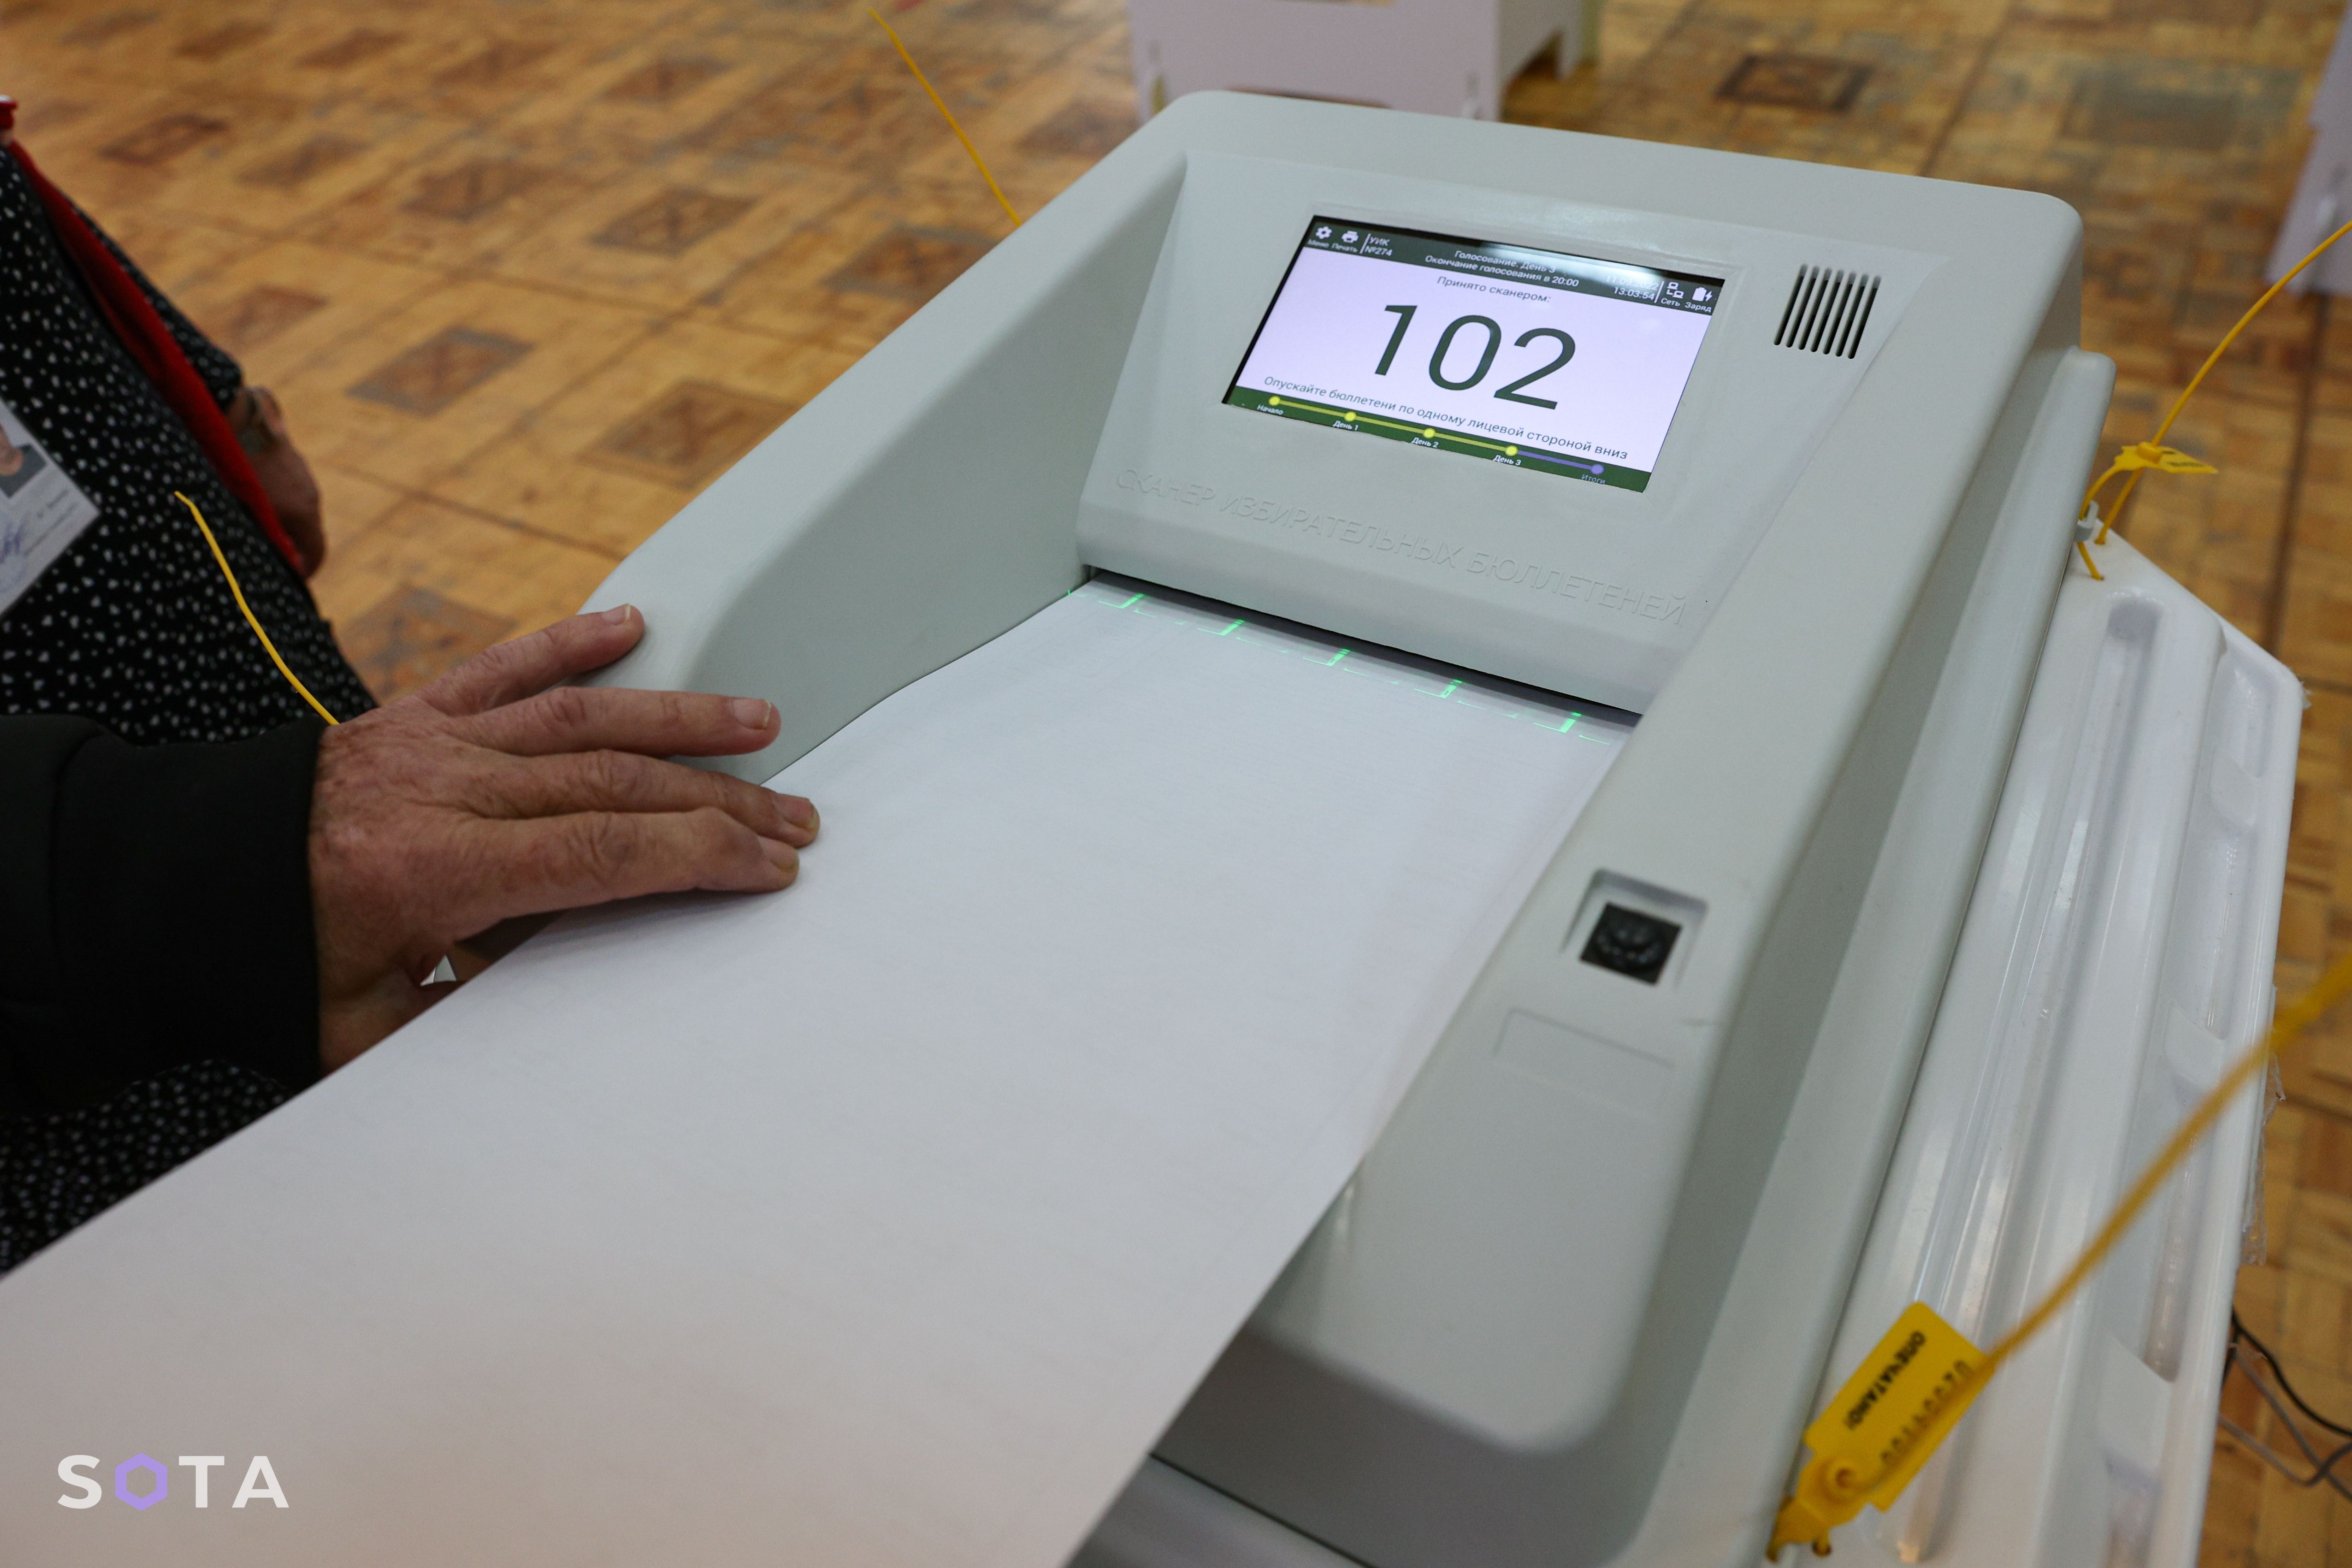 Комплекс обработки избирательных бюллетеней (КОИБ)
SOTA